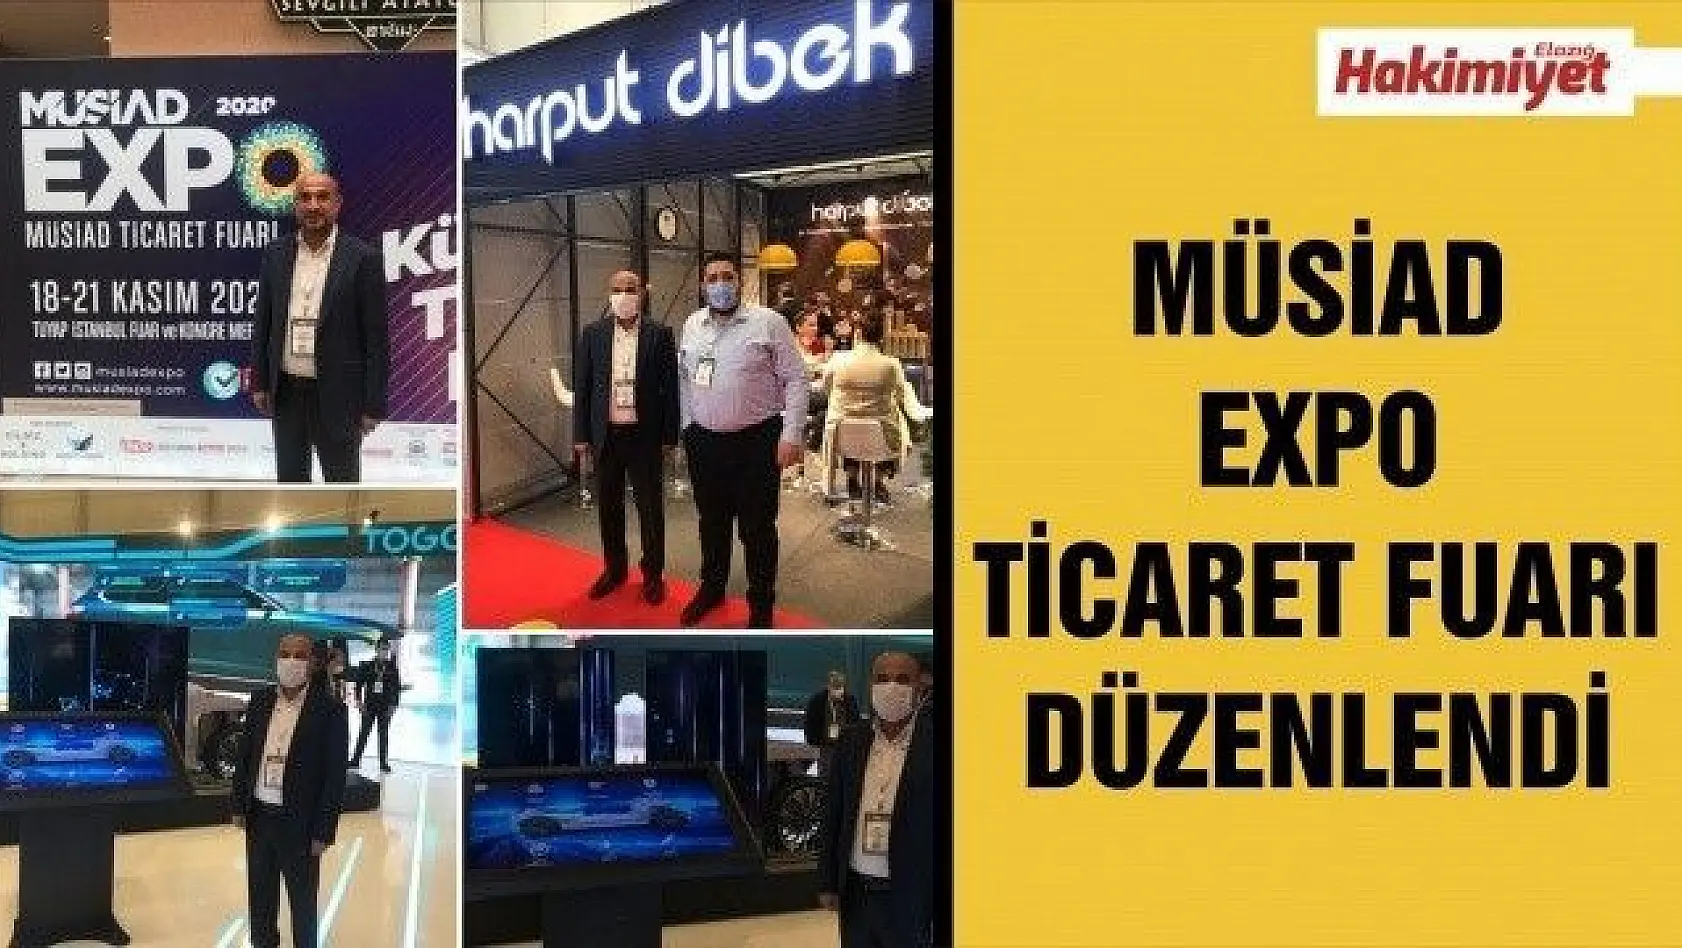 MÜSİAD EXPO TİCARET FUARI DÜZENLENDİ 